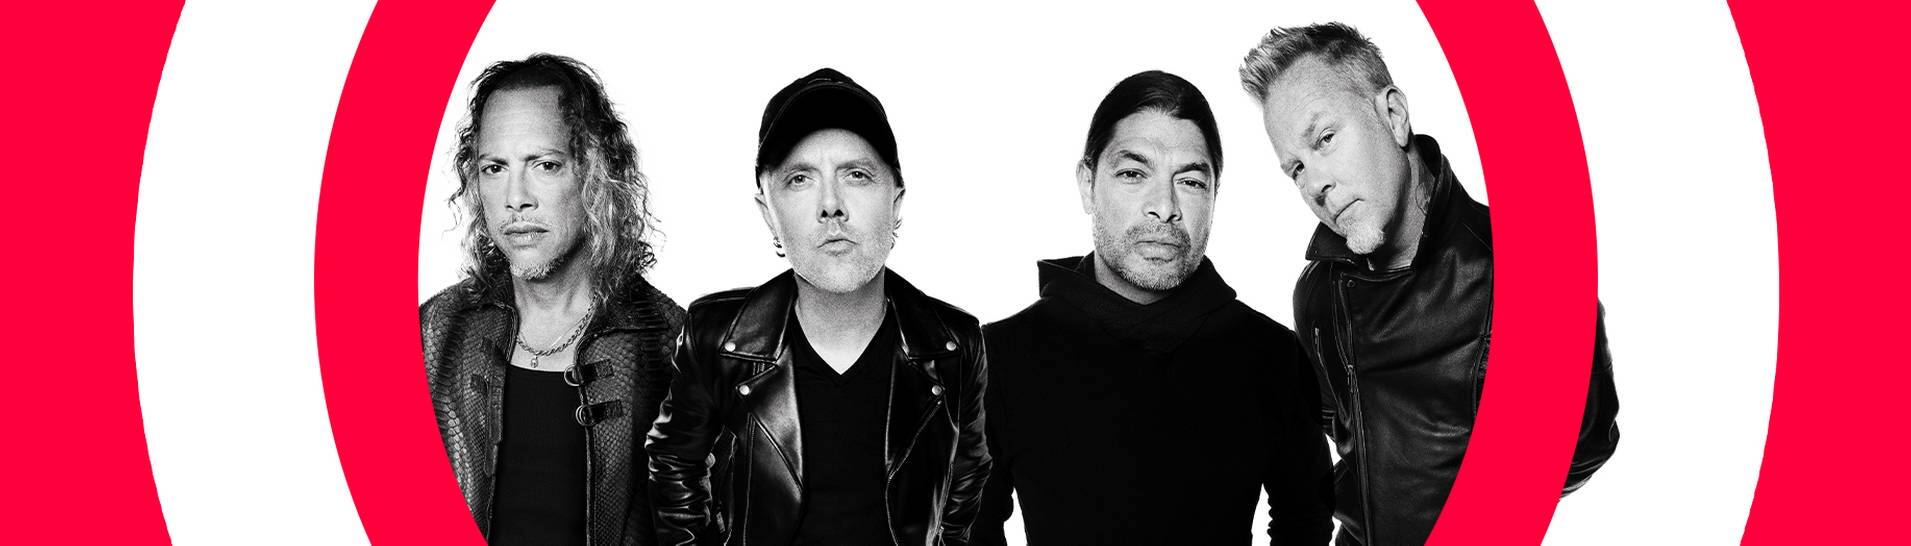 Die vier Bandmitglieder von Metallica